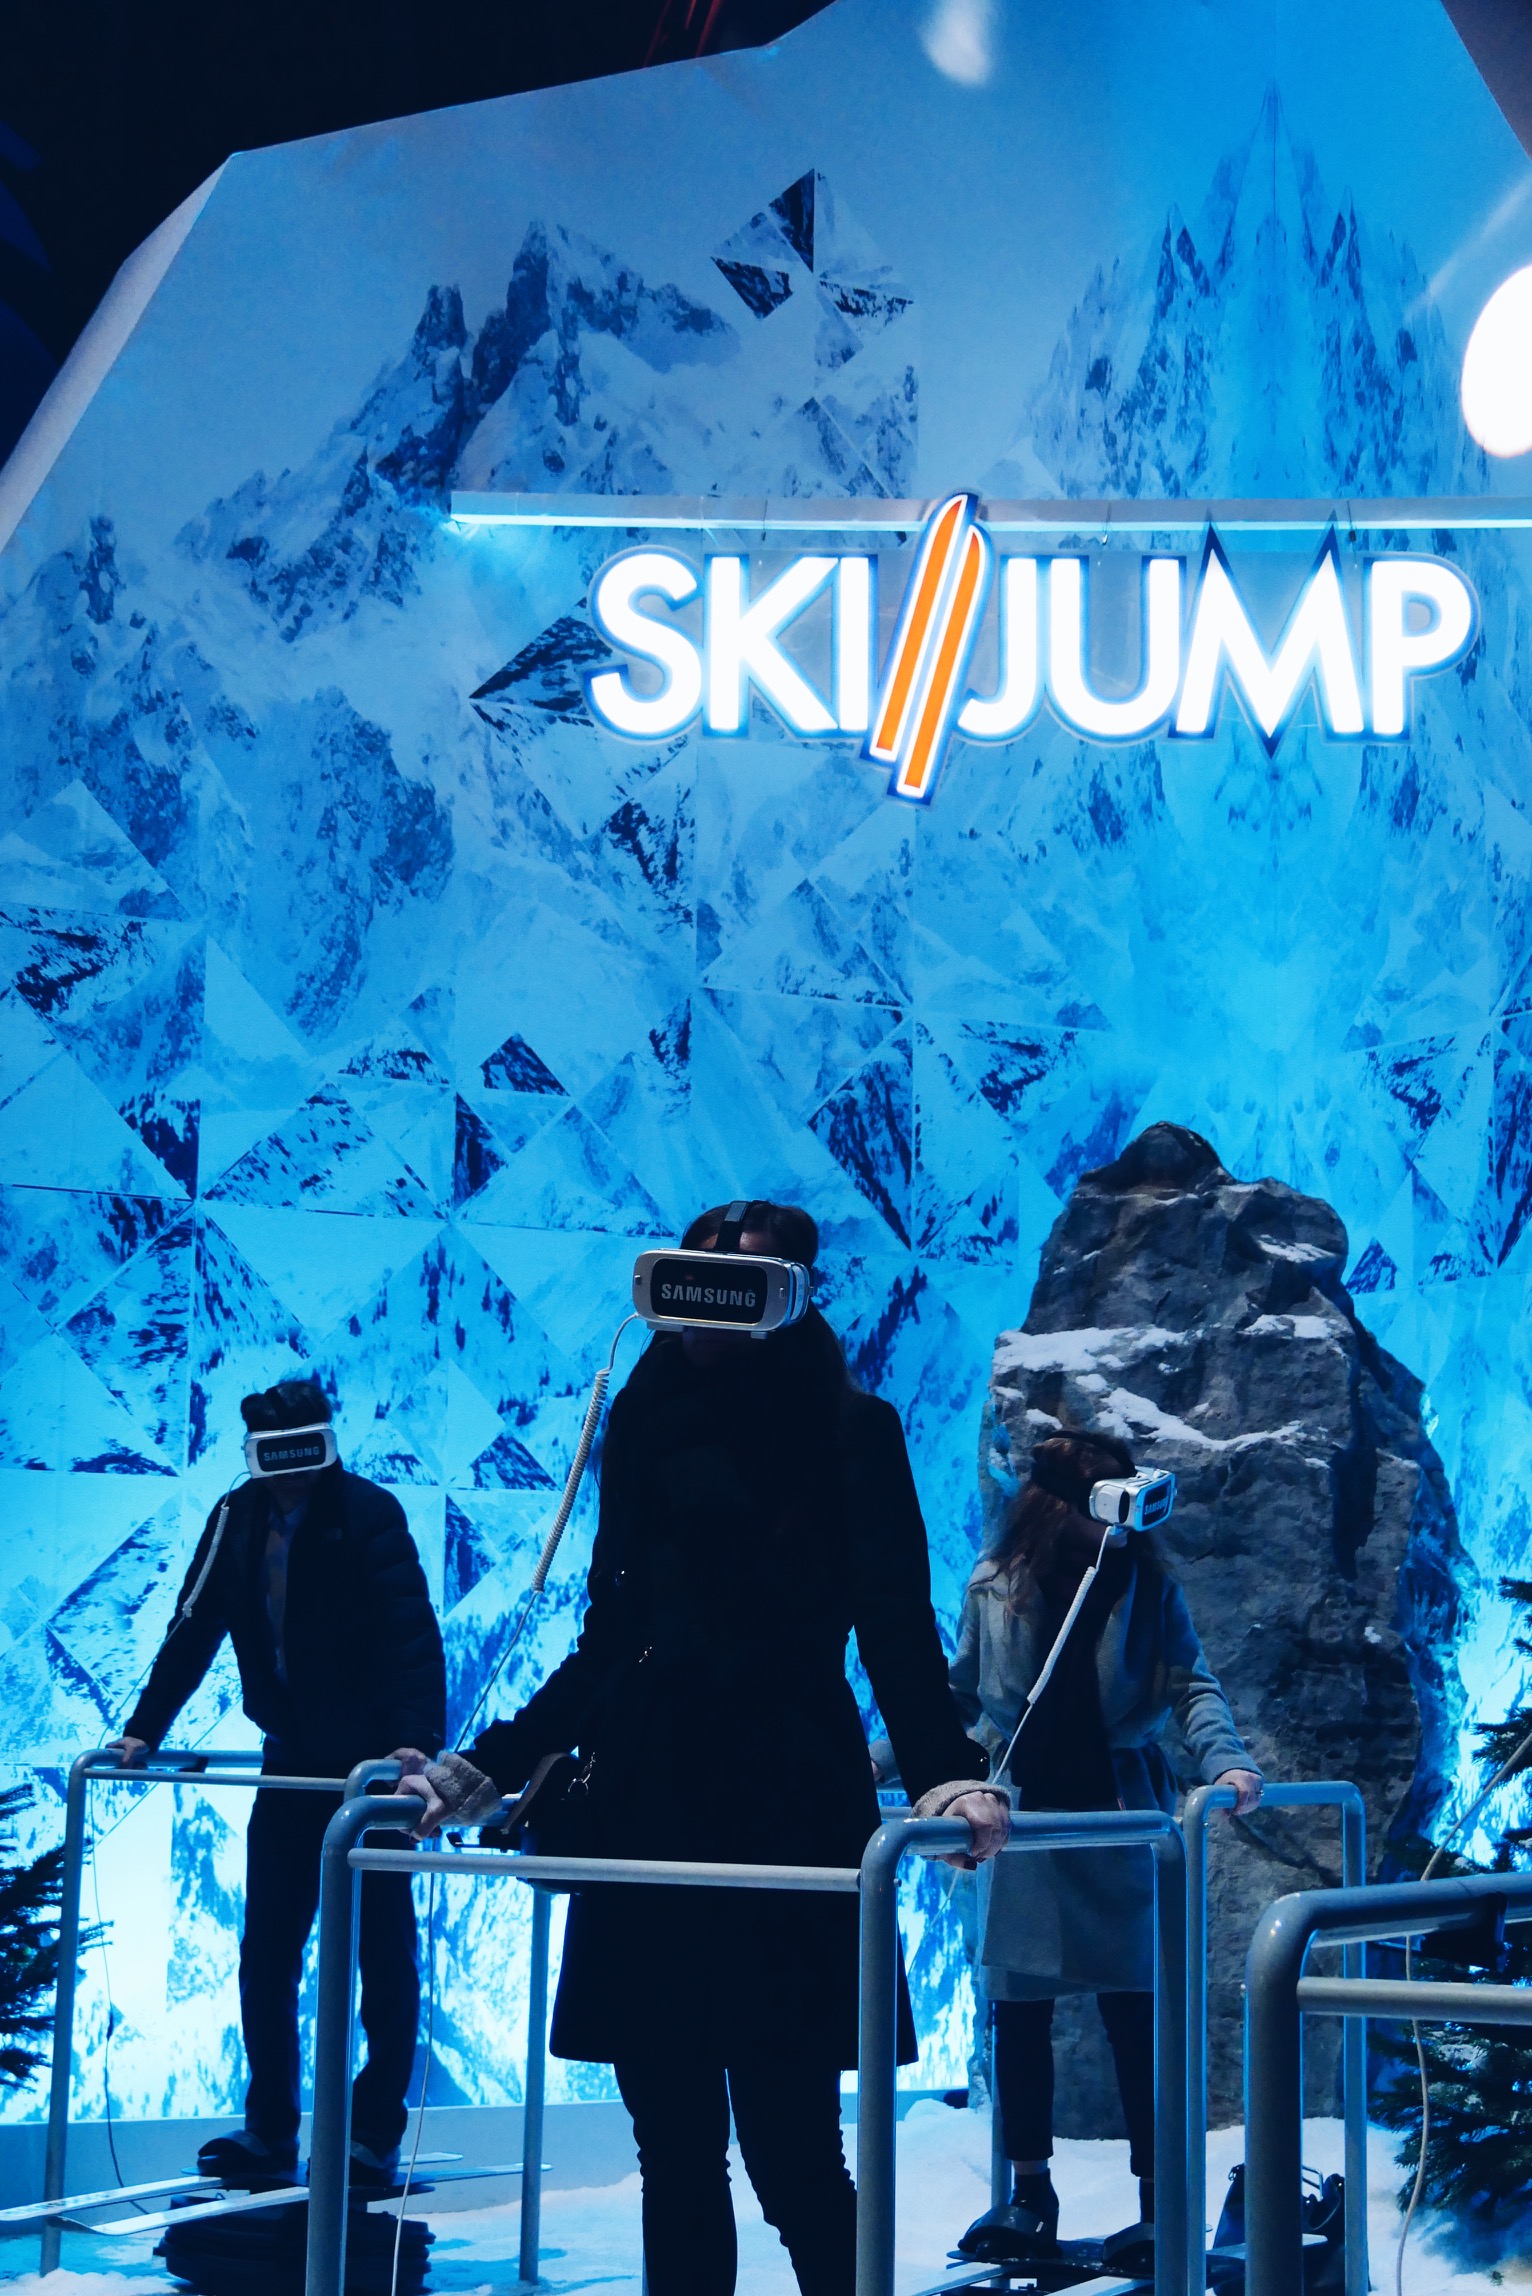 Ski-Jump-Samsung-Life-Changer-Park-parc-réalité-virtuelle-Gear-VR-Grand-Palais-des-Glaces-Paris-photos-usofparis-blog